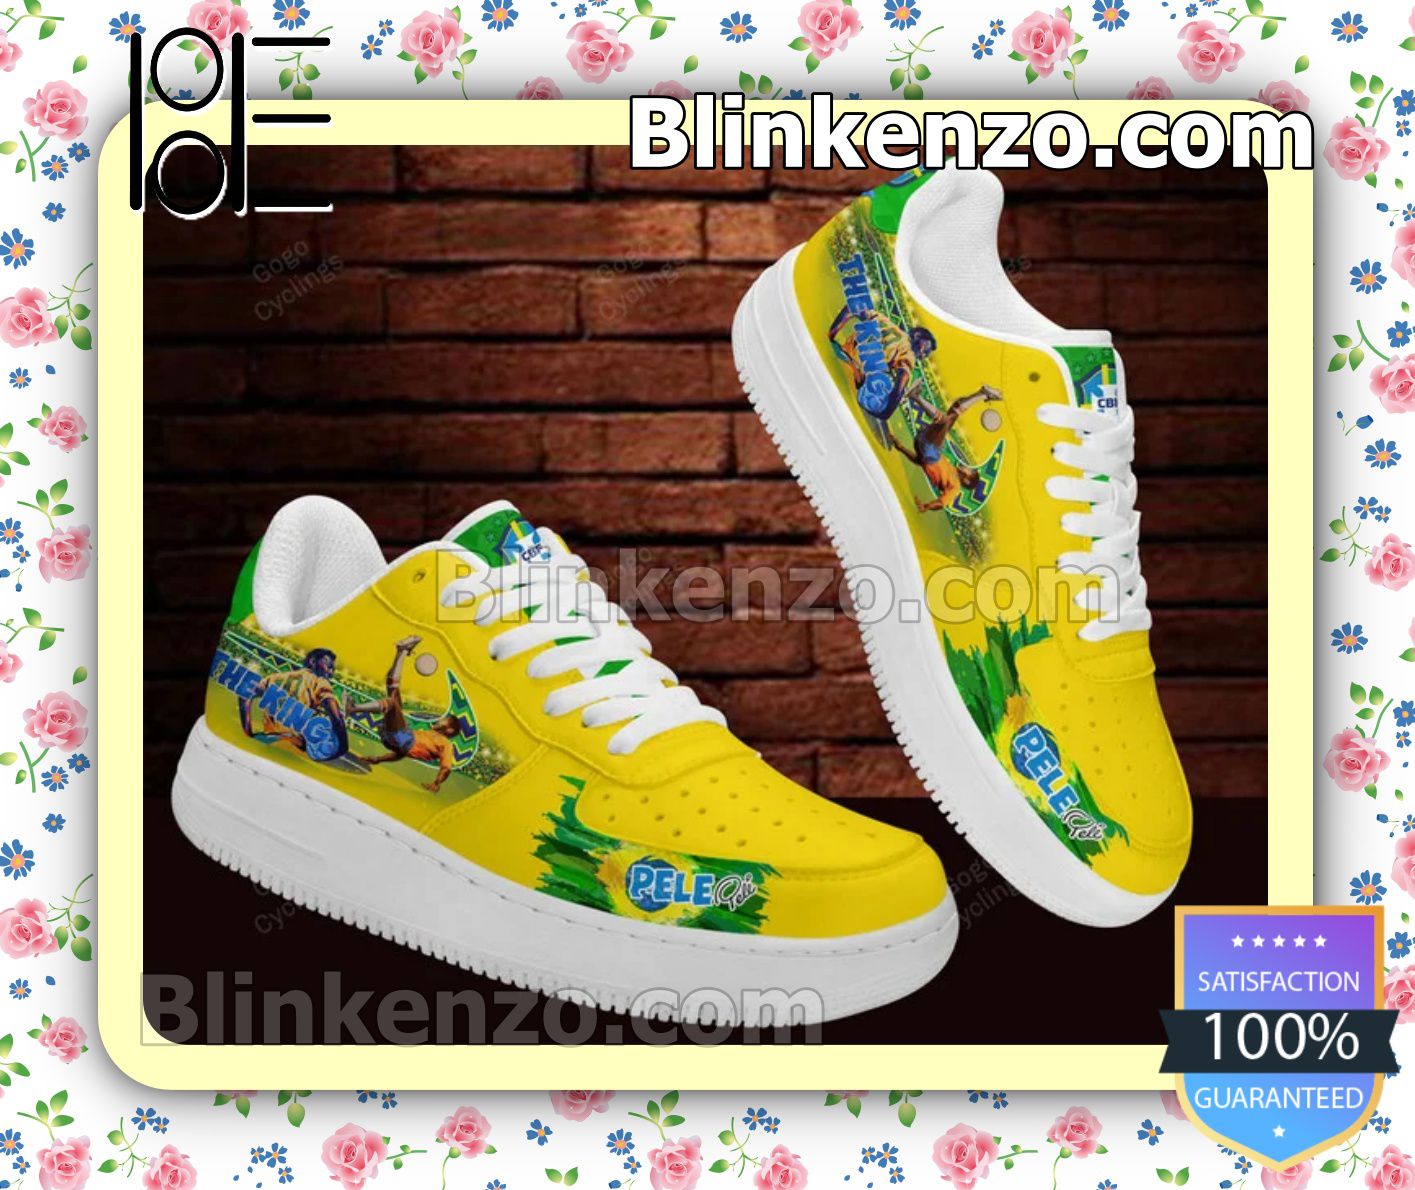 Pelé Of Men Nike Shoes - Blinkenzo